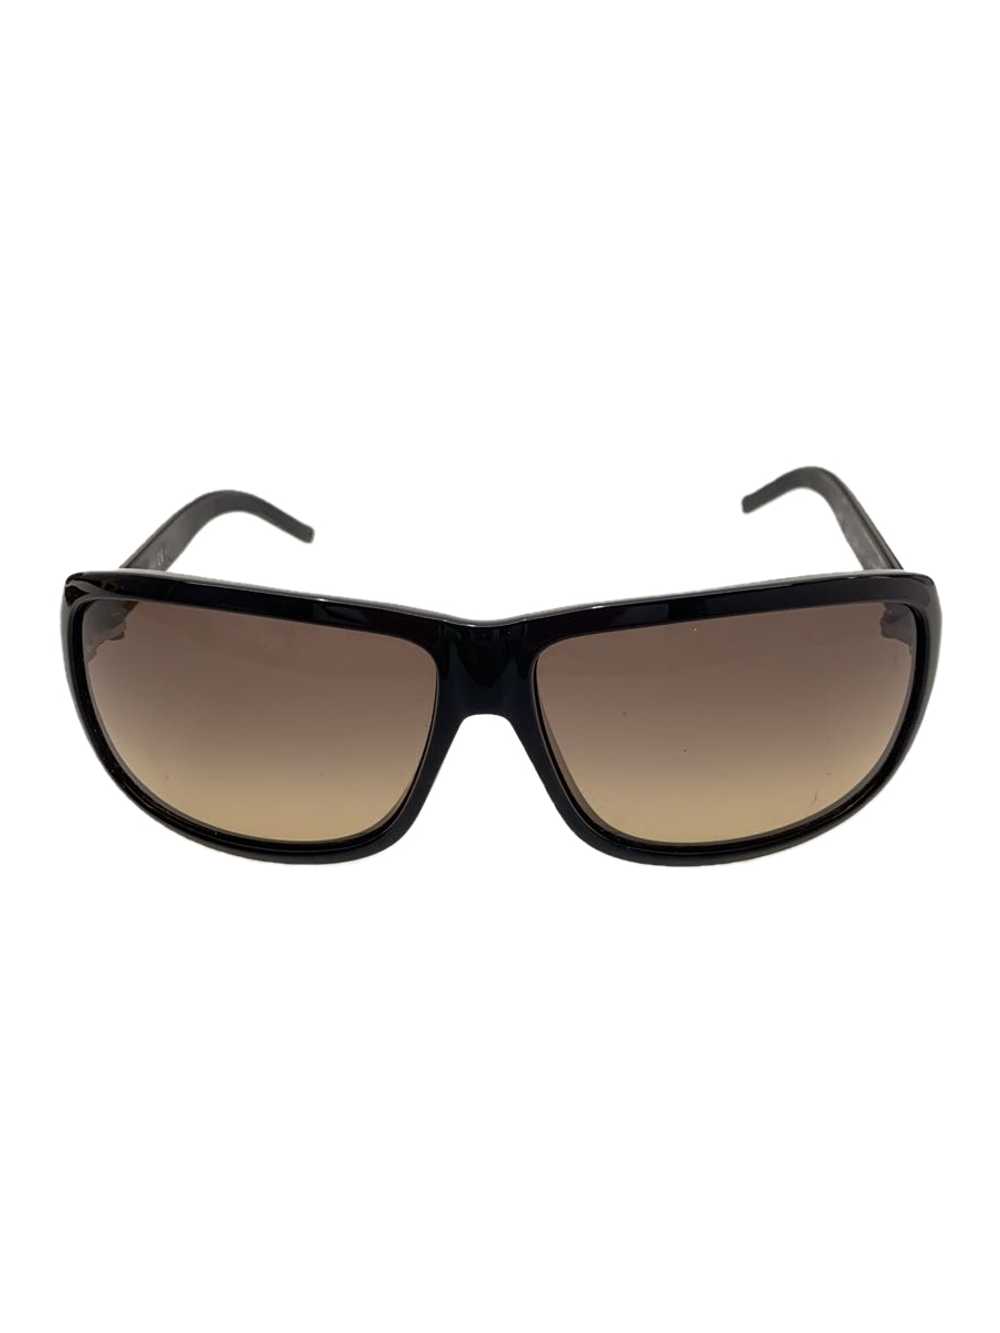 Used Gucci Sunglasses/Titanium/Blk/Ladies/Gg1642F - image 1